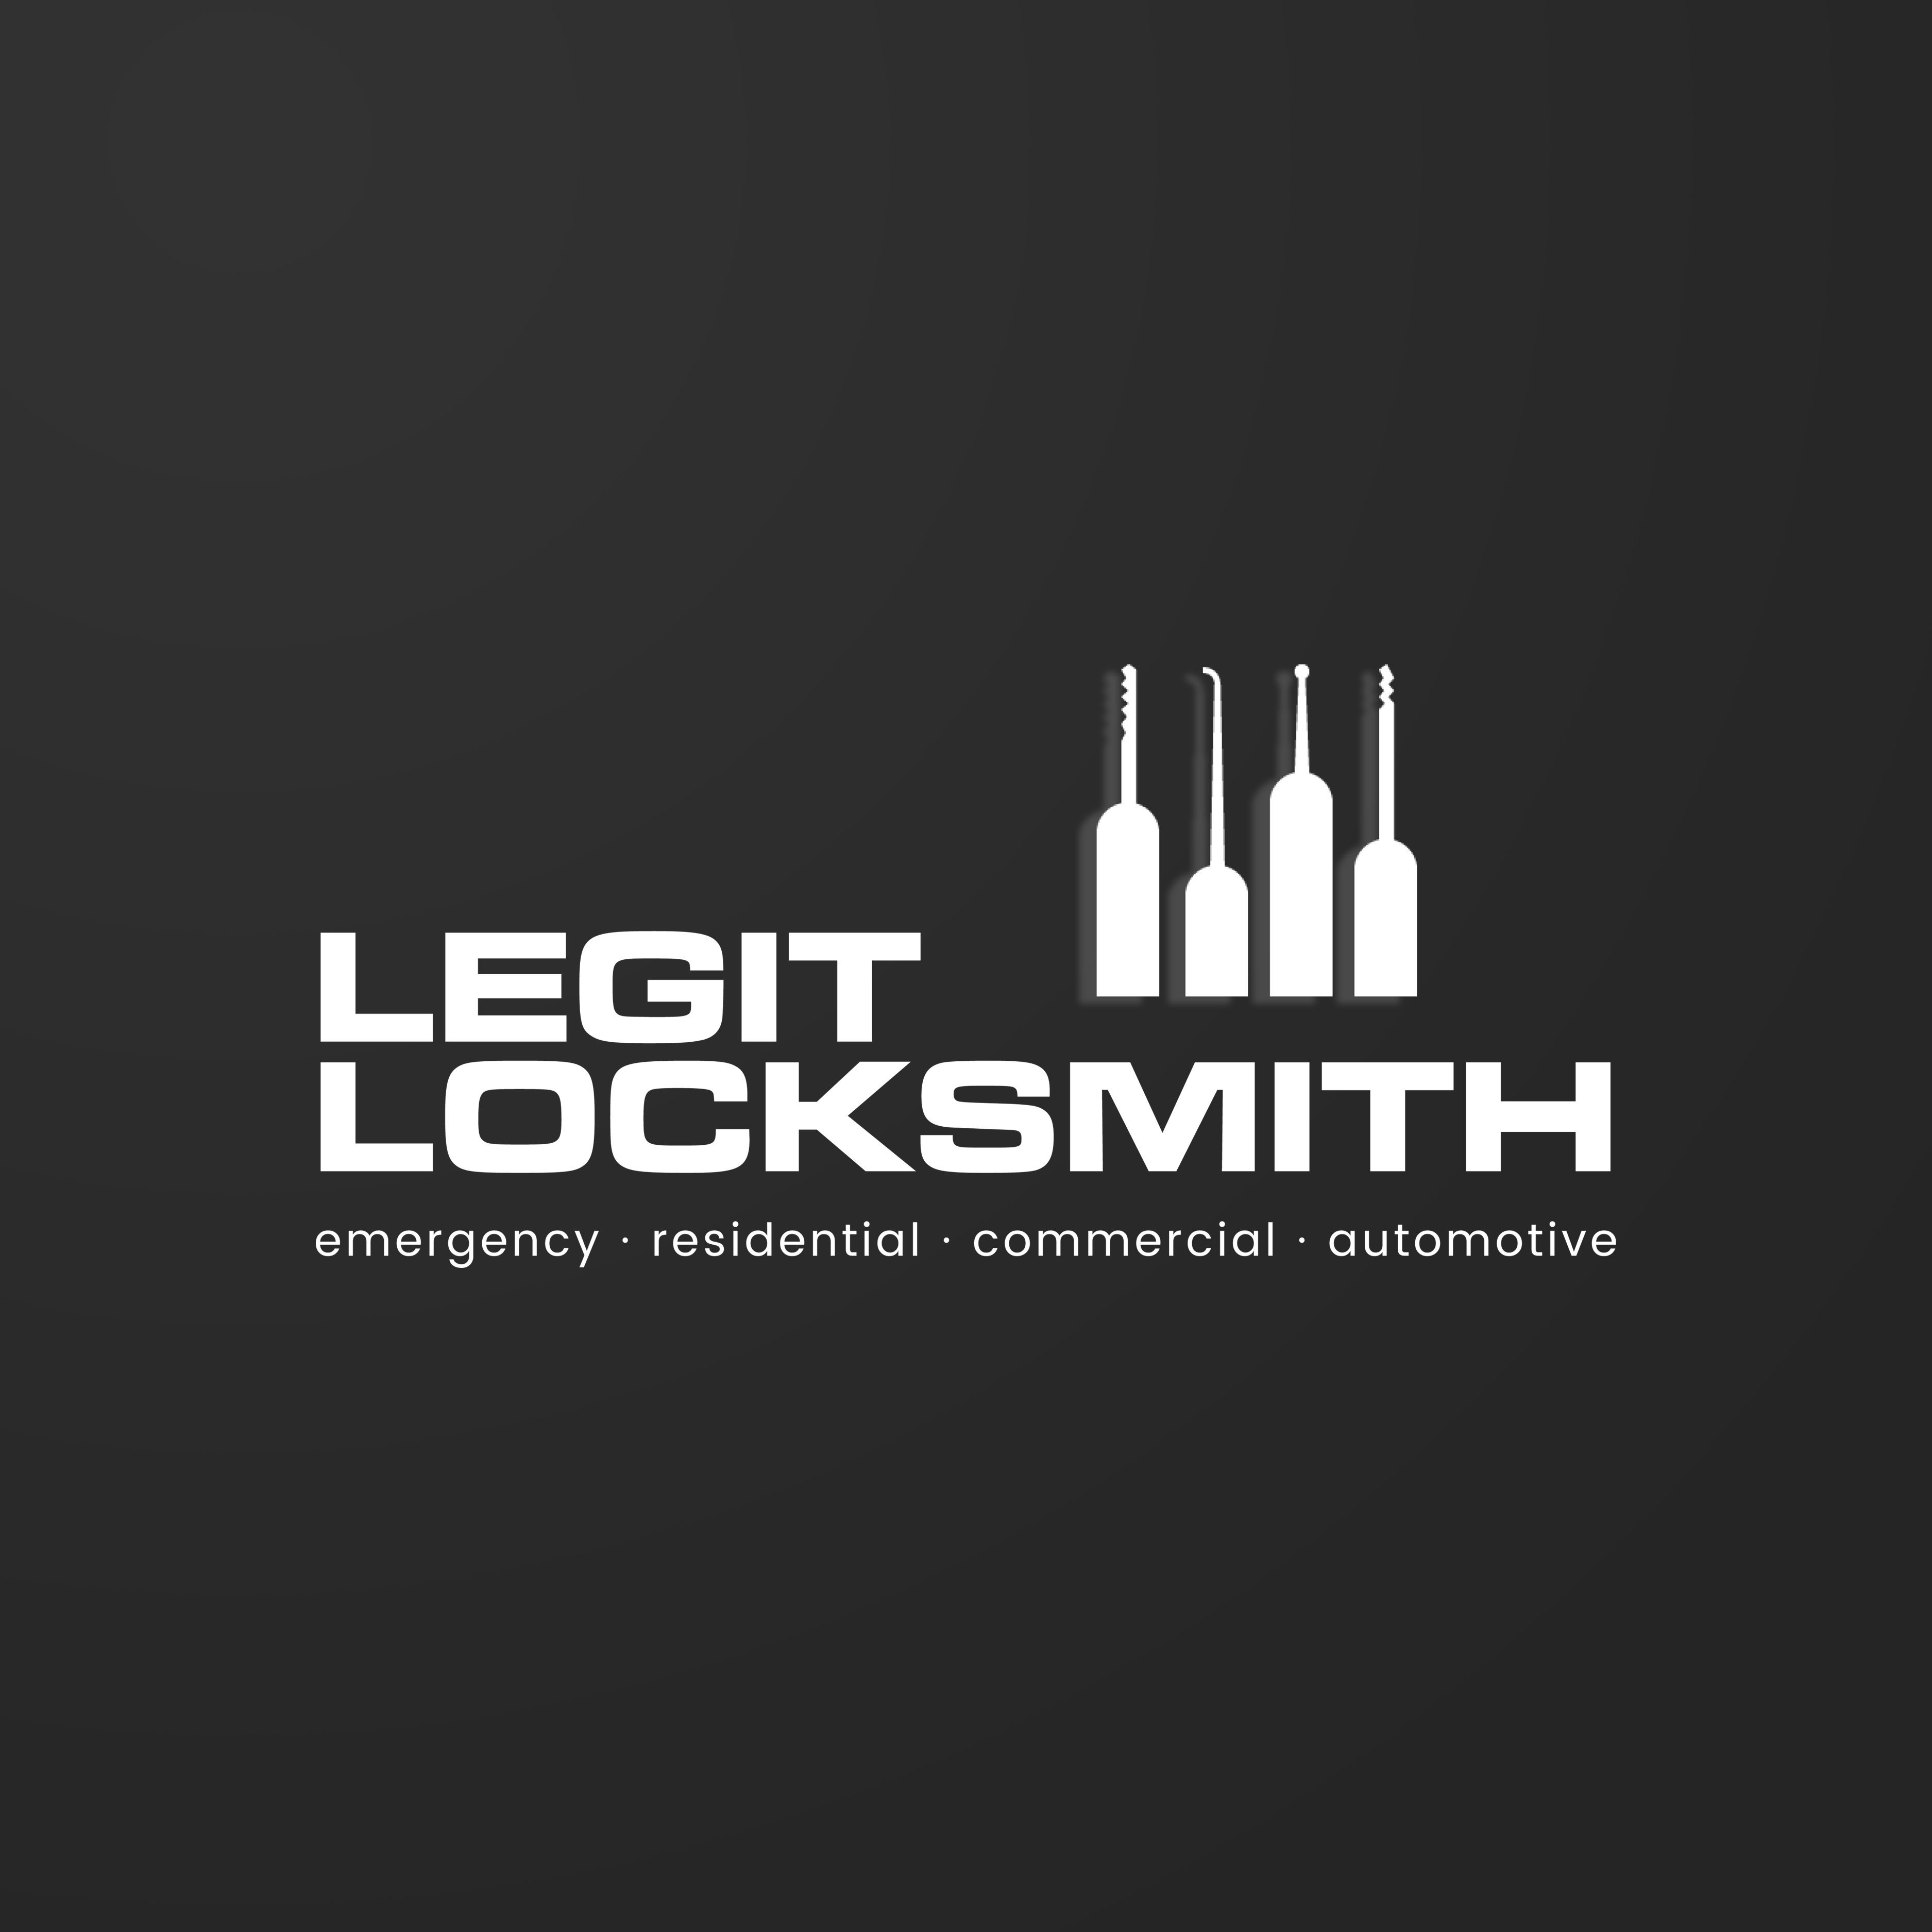 Legit Locksmith